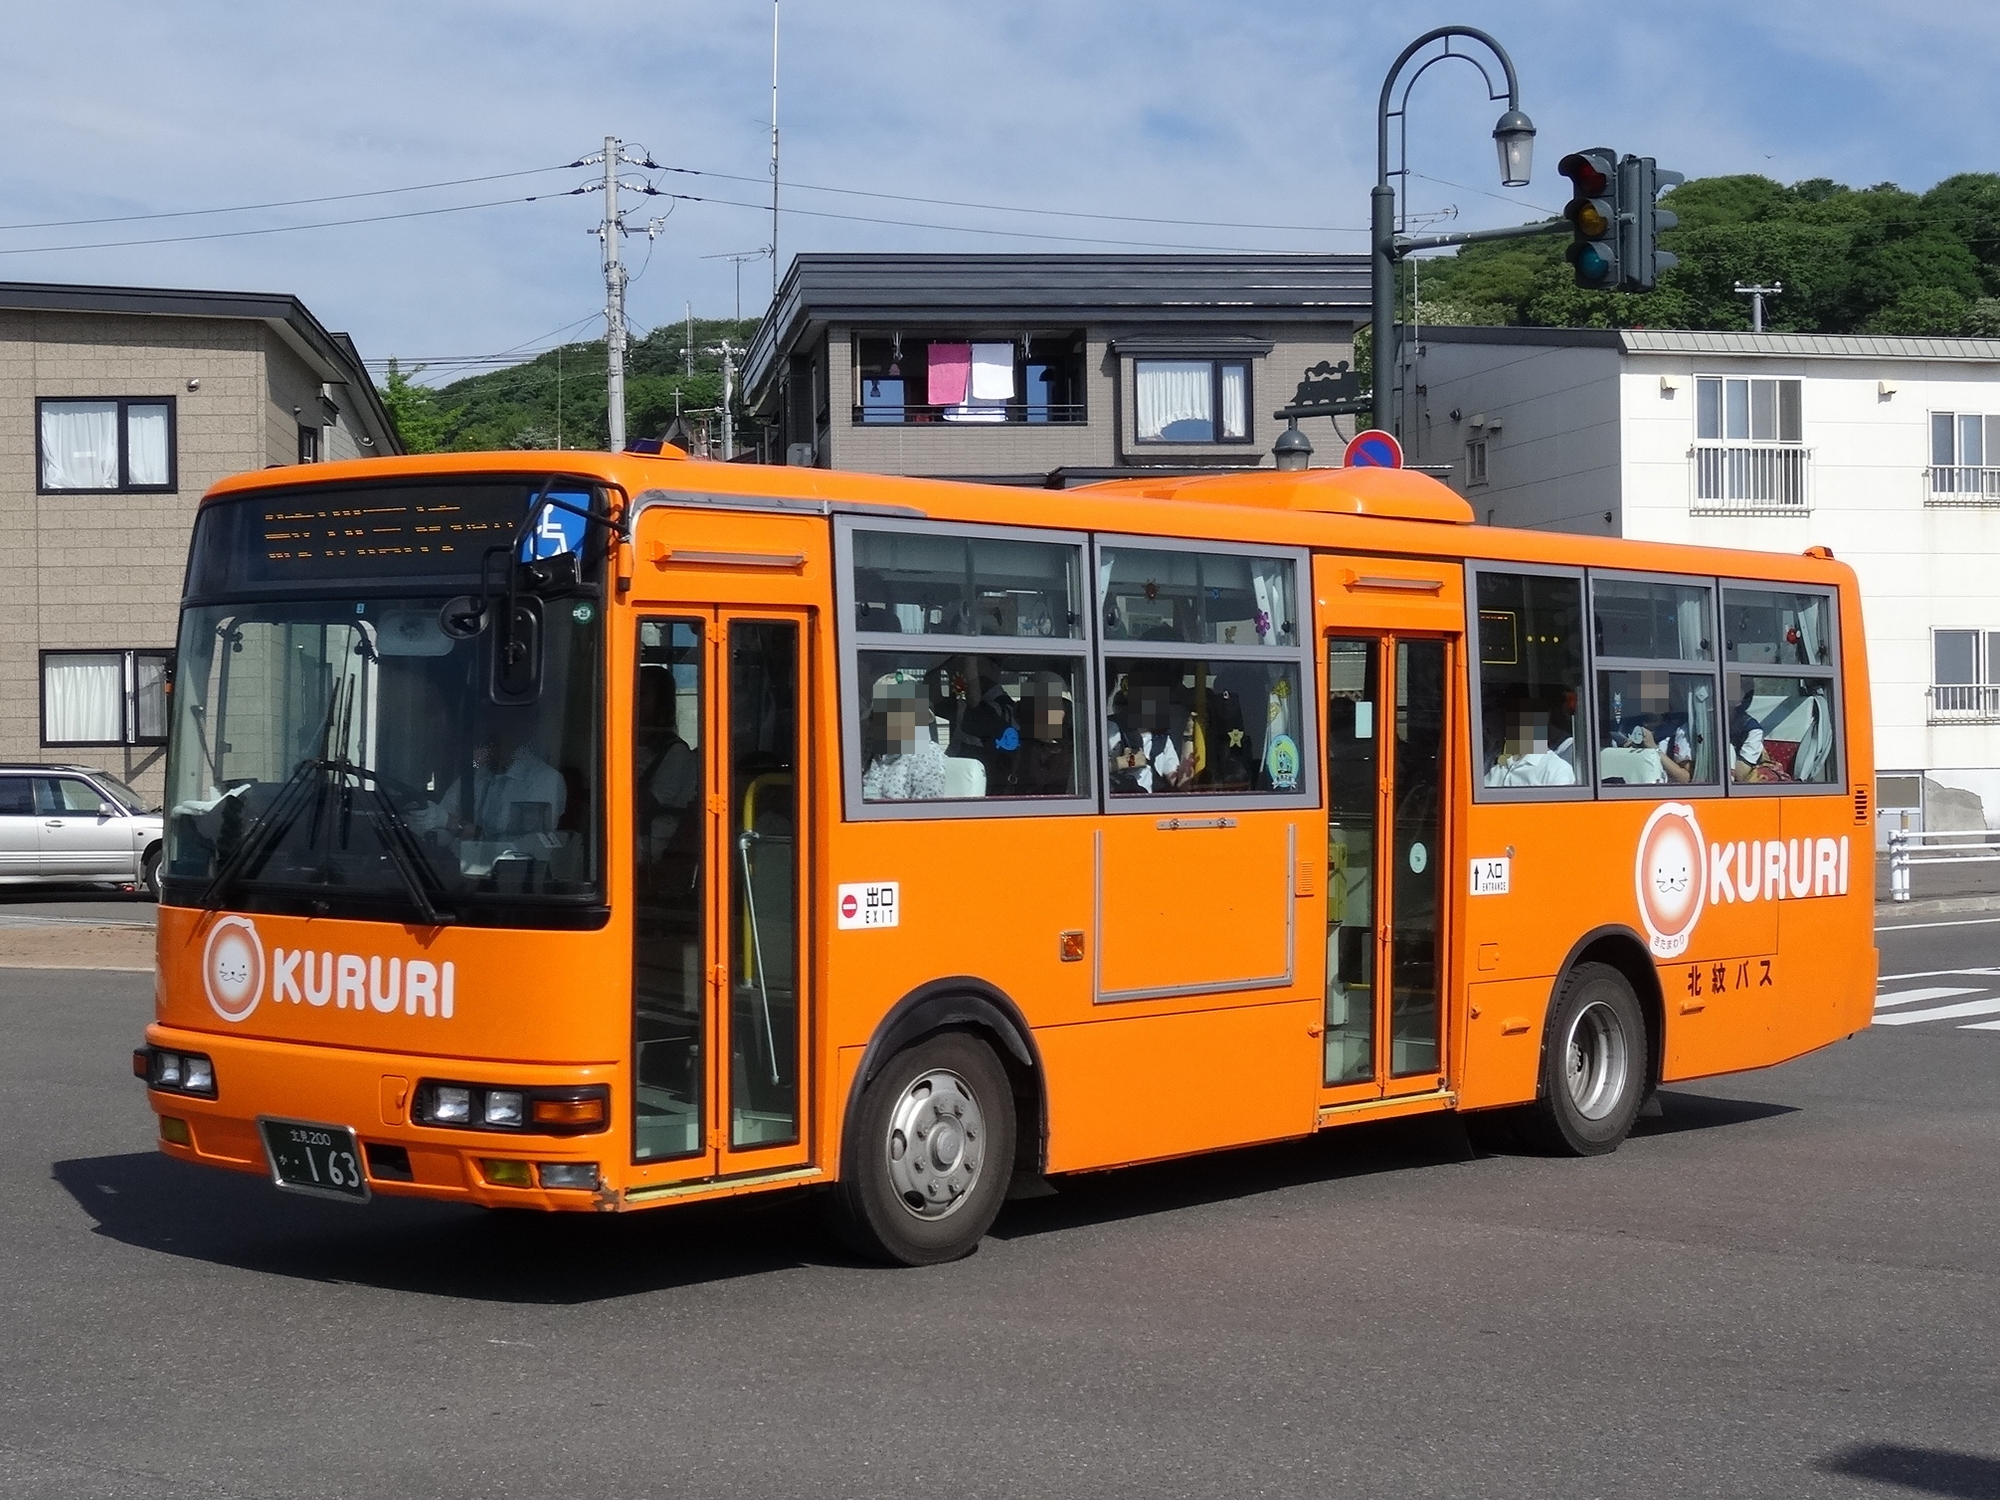 Оранжевый автобус пермь экскурсии. Оранжевый автобус. Приложение автобусы апельсин.